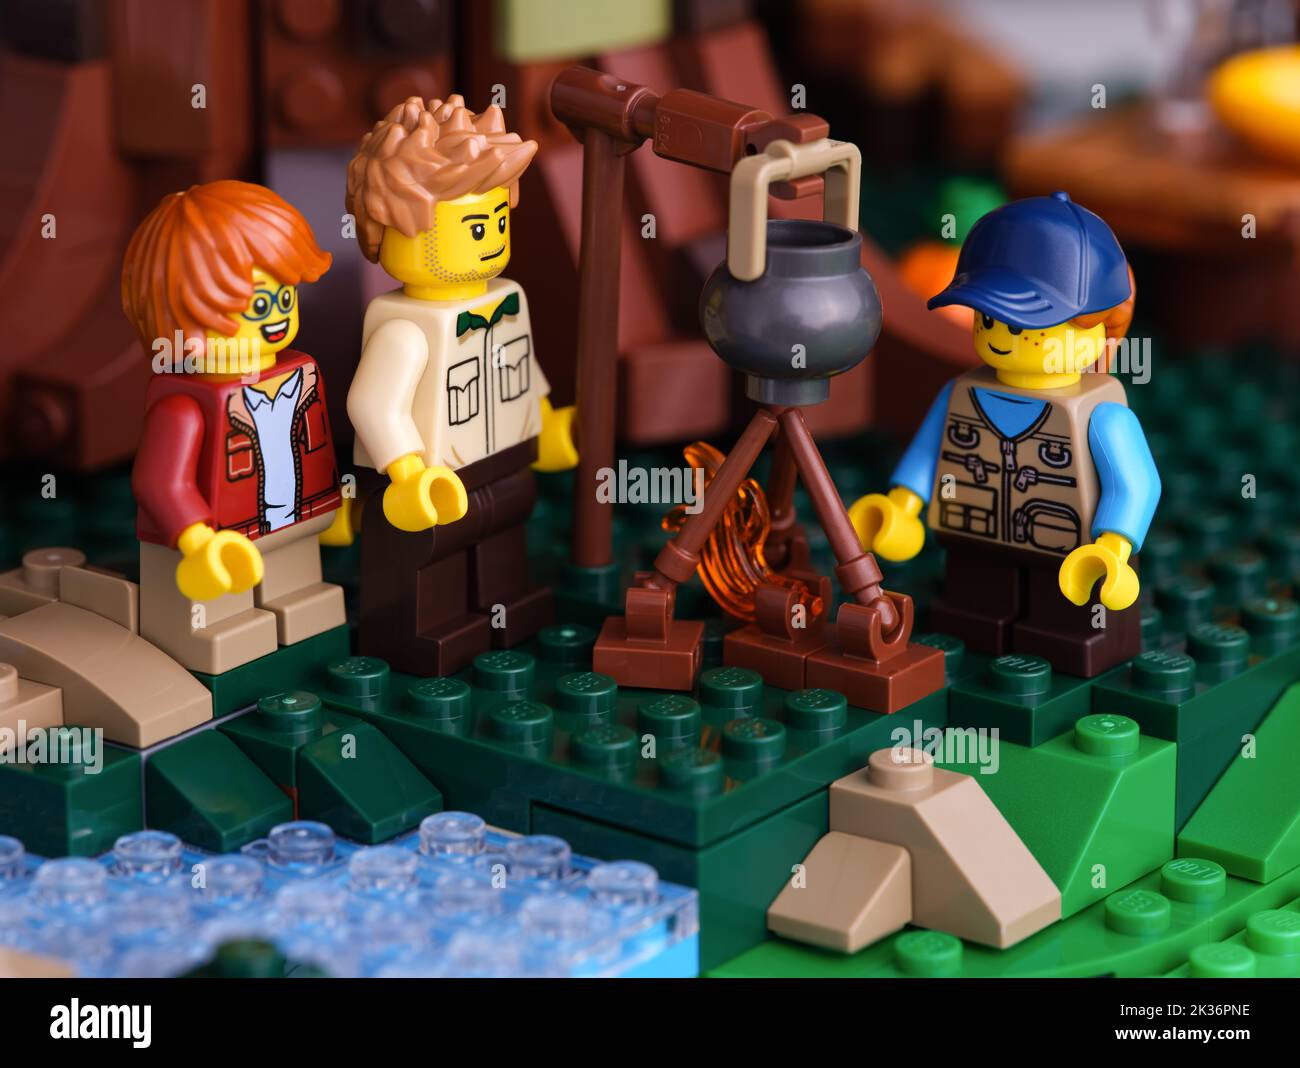 Tambow, Russische Föderation - 22. Juni 2022 drei Lego Minifiguren - Mann und zwei Kinder, die am Lagerfeuer Essen kochen. Nahaufnahme Stockfoto